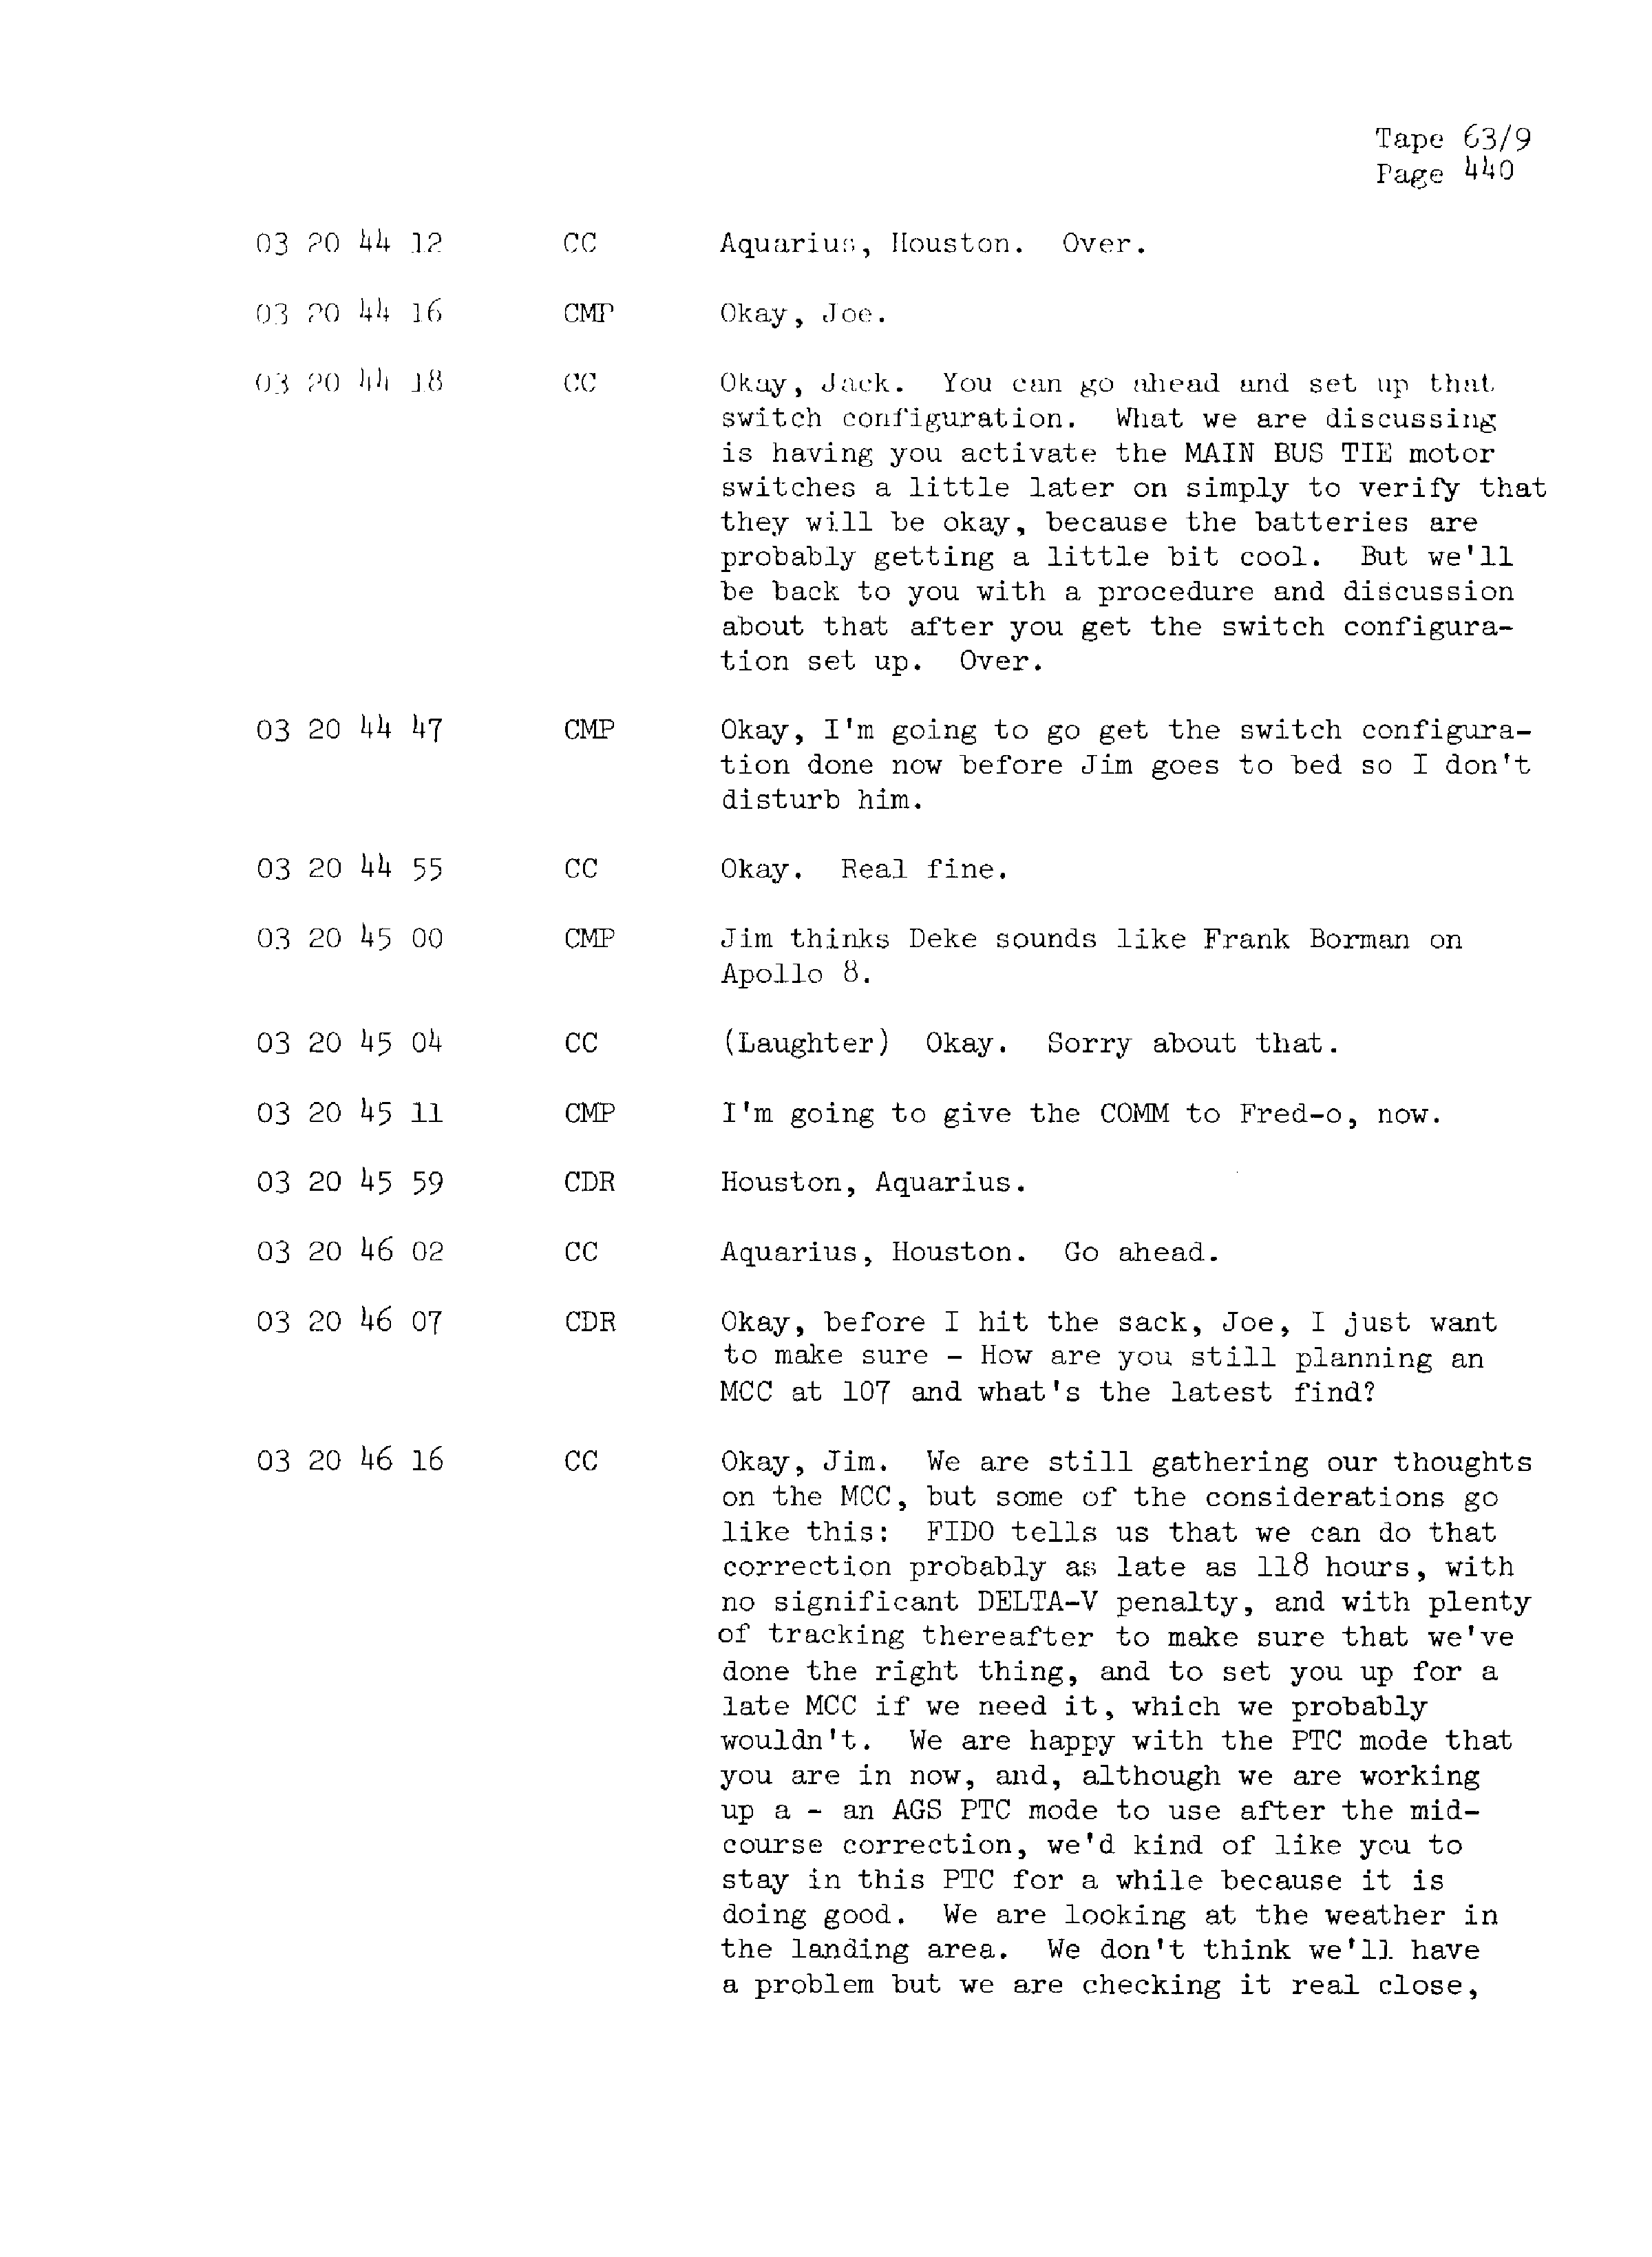 Page 447 of Apollo 13’s original transcript